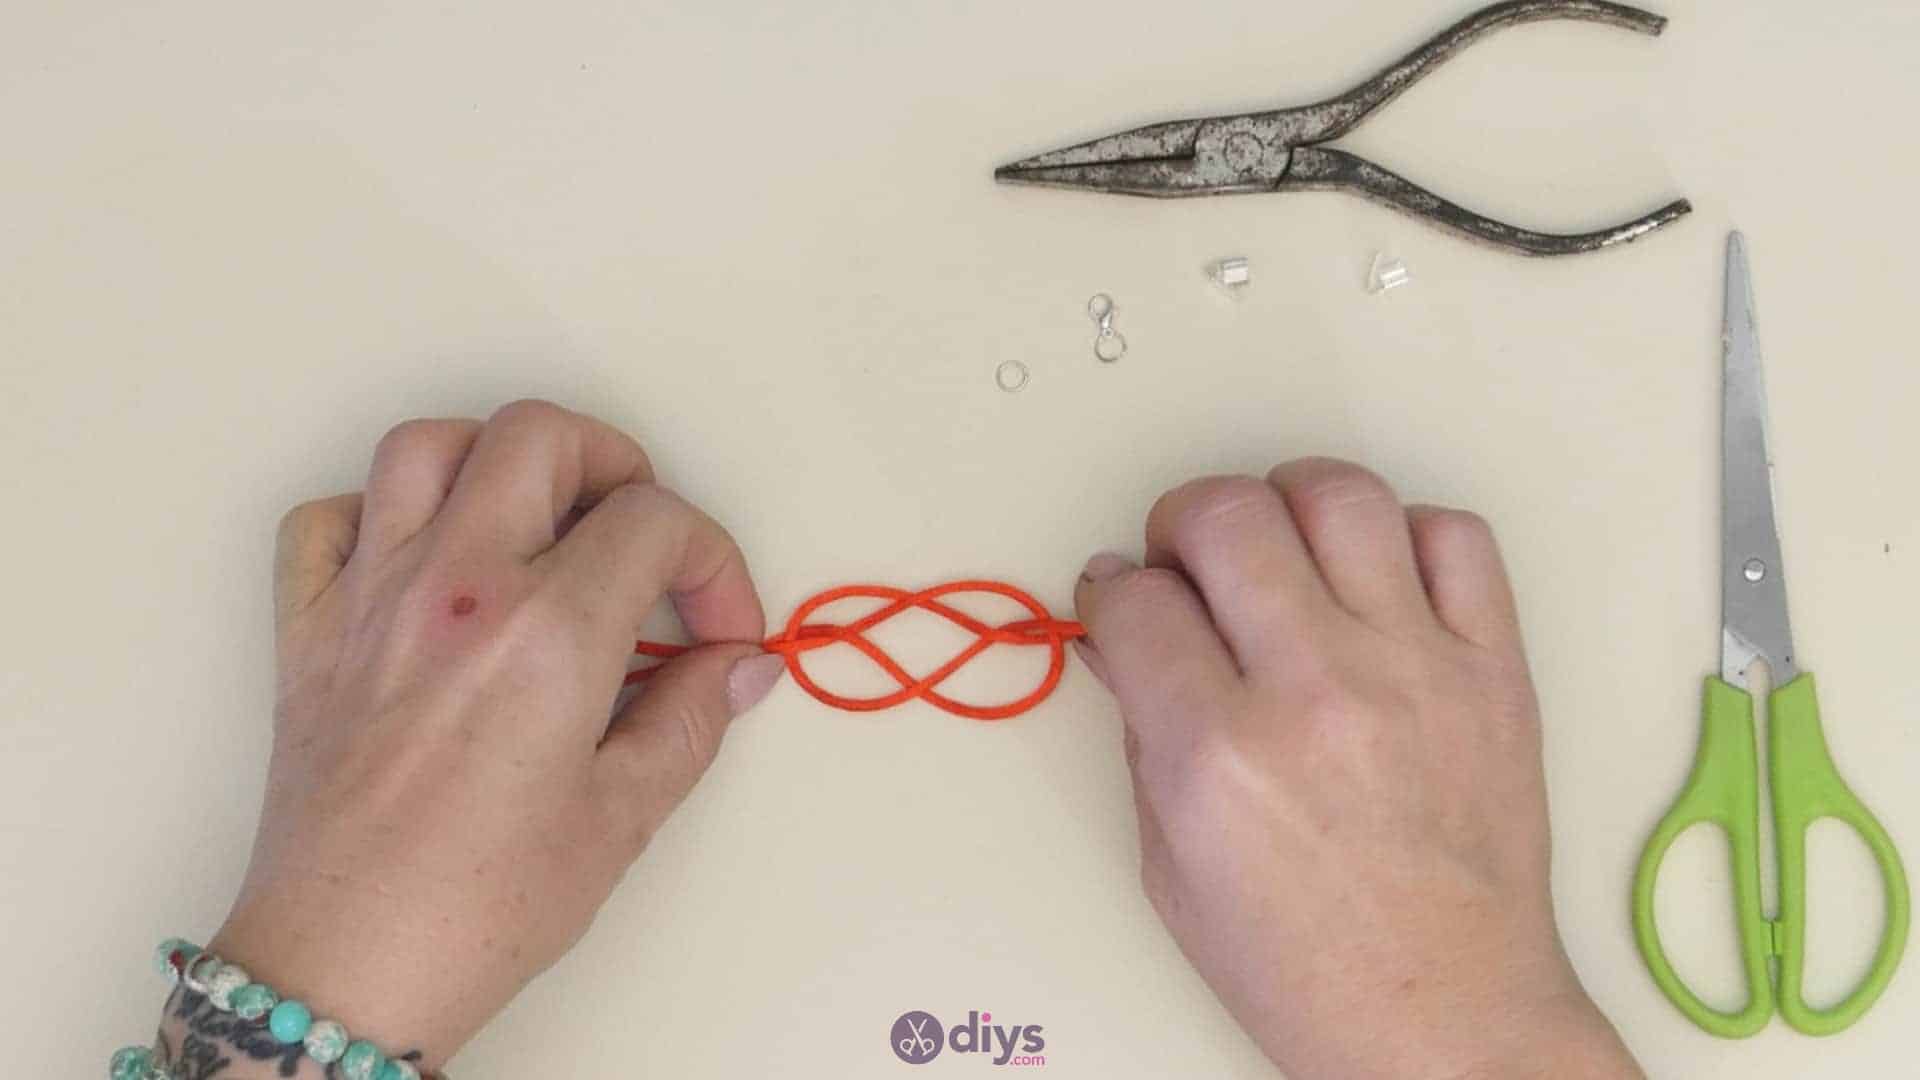 Diy knotted bracelet step 3c